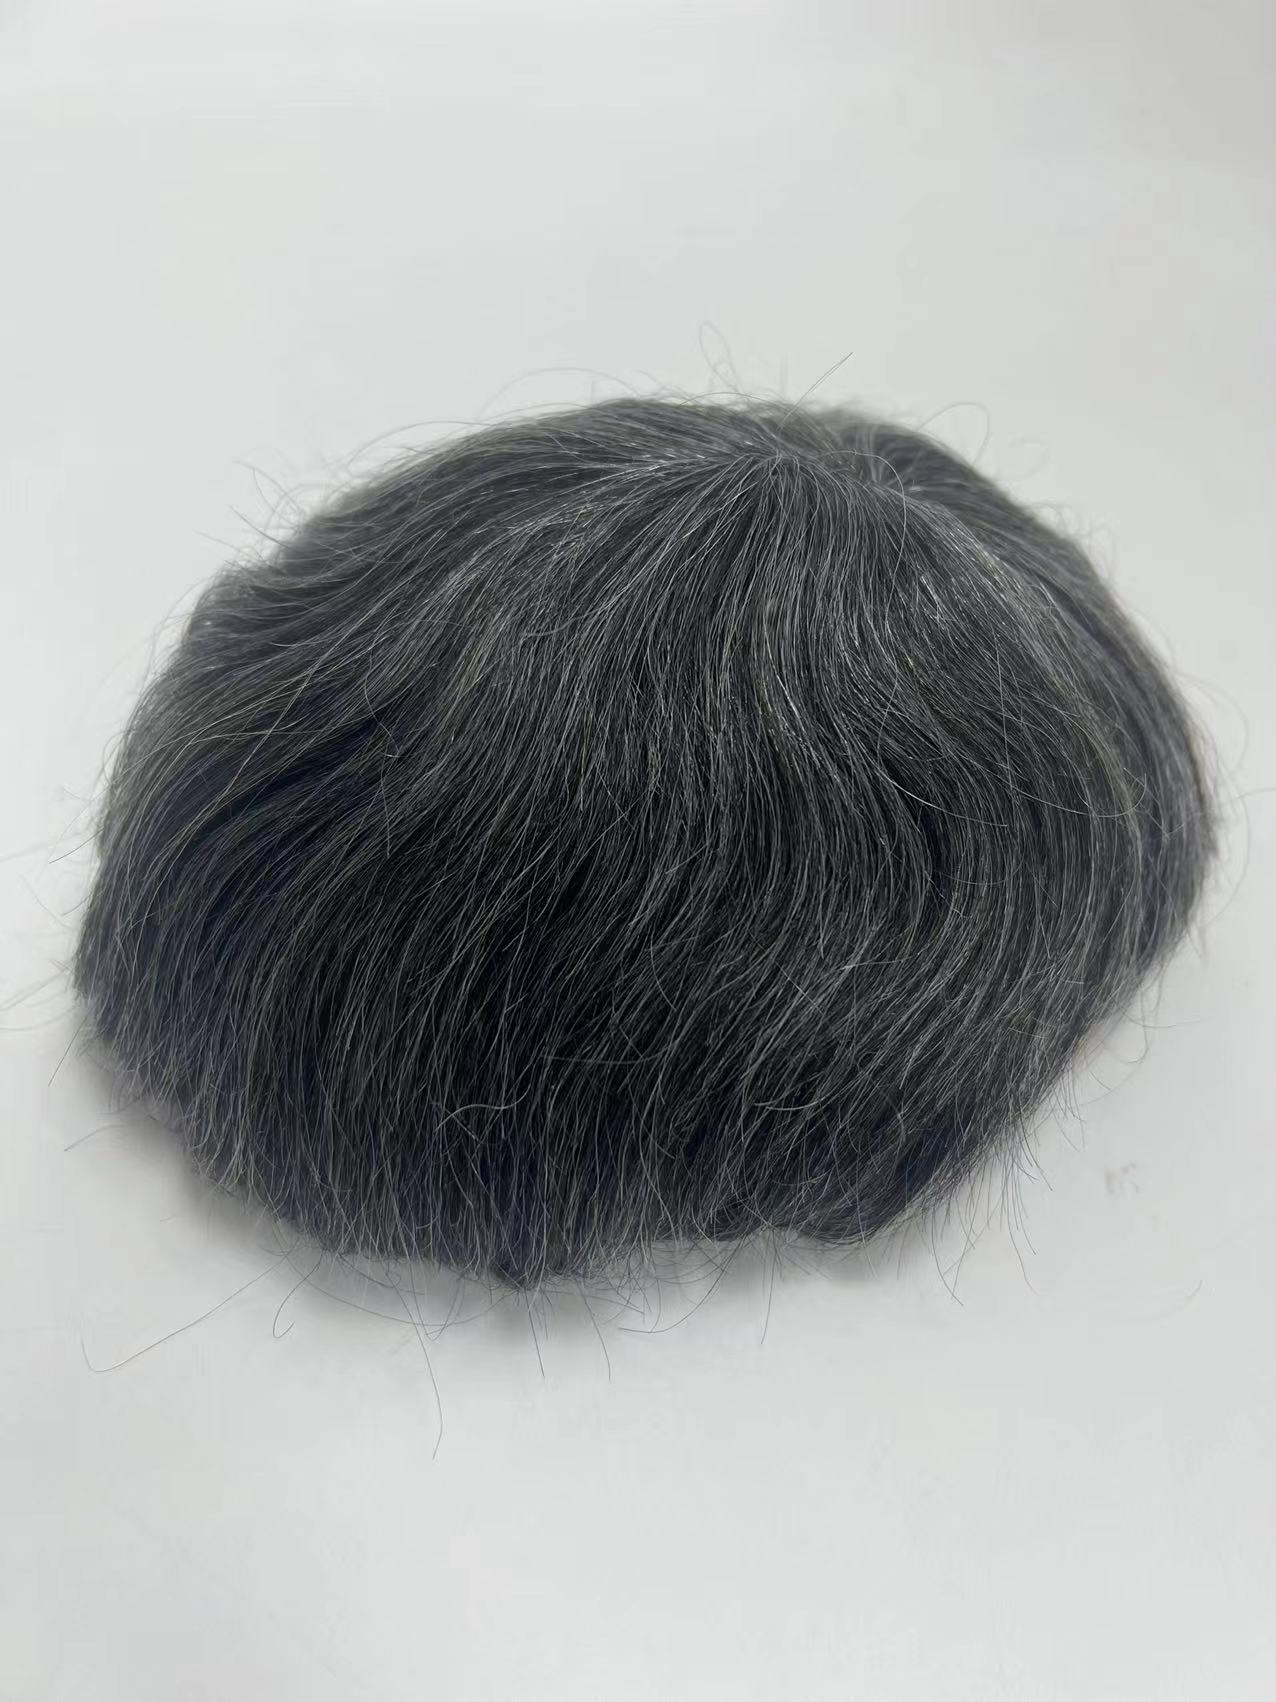 SW039489 Fine Welded Mono Base Hair System for Wholesale (Système de coiffure mono base fine soudée pour la vente en gros)